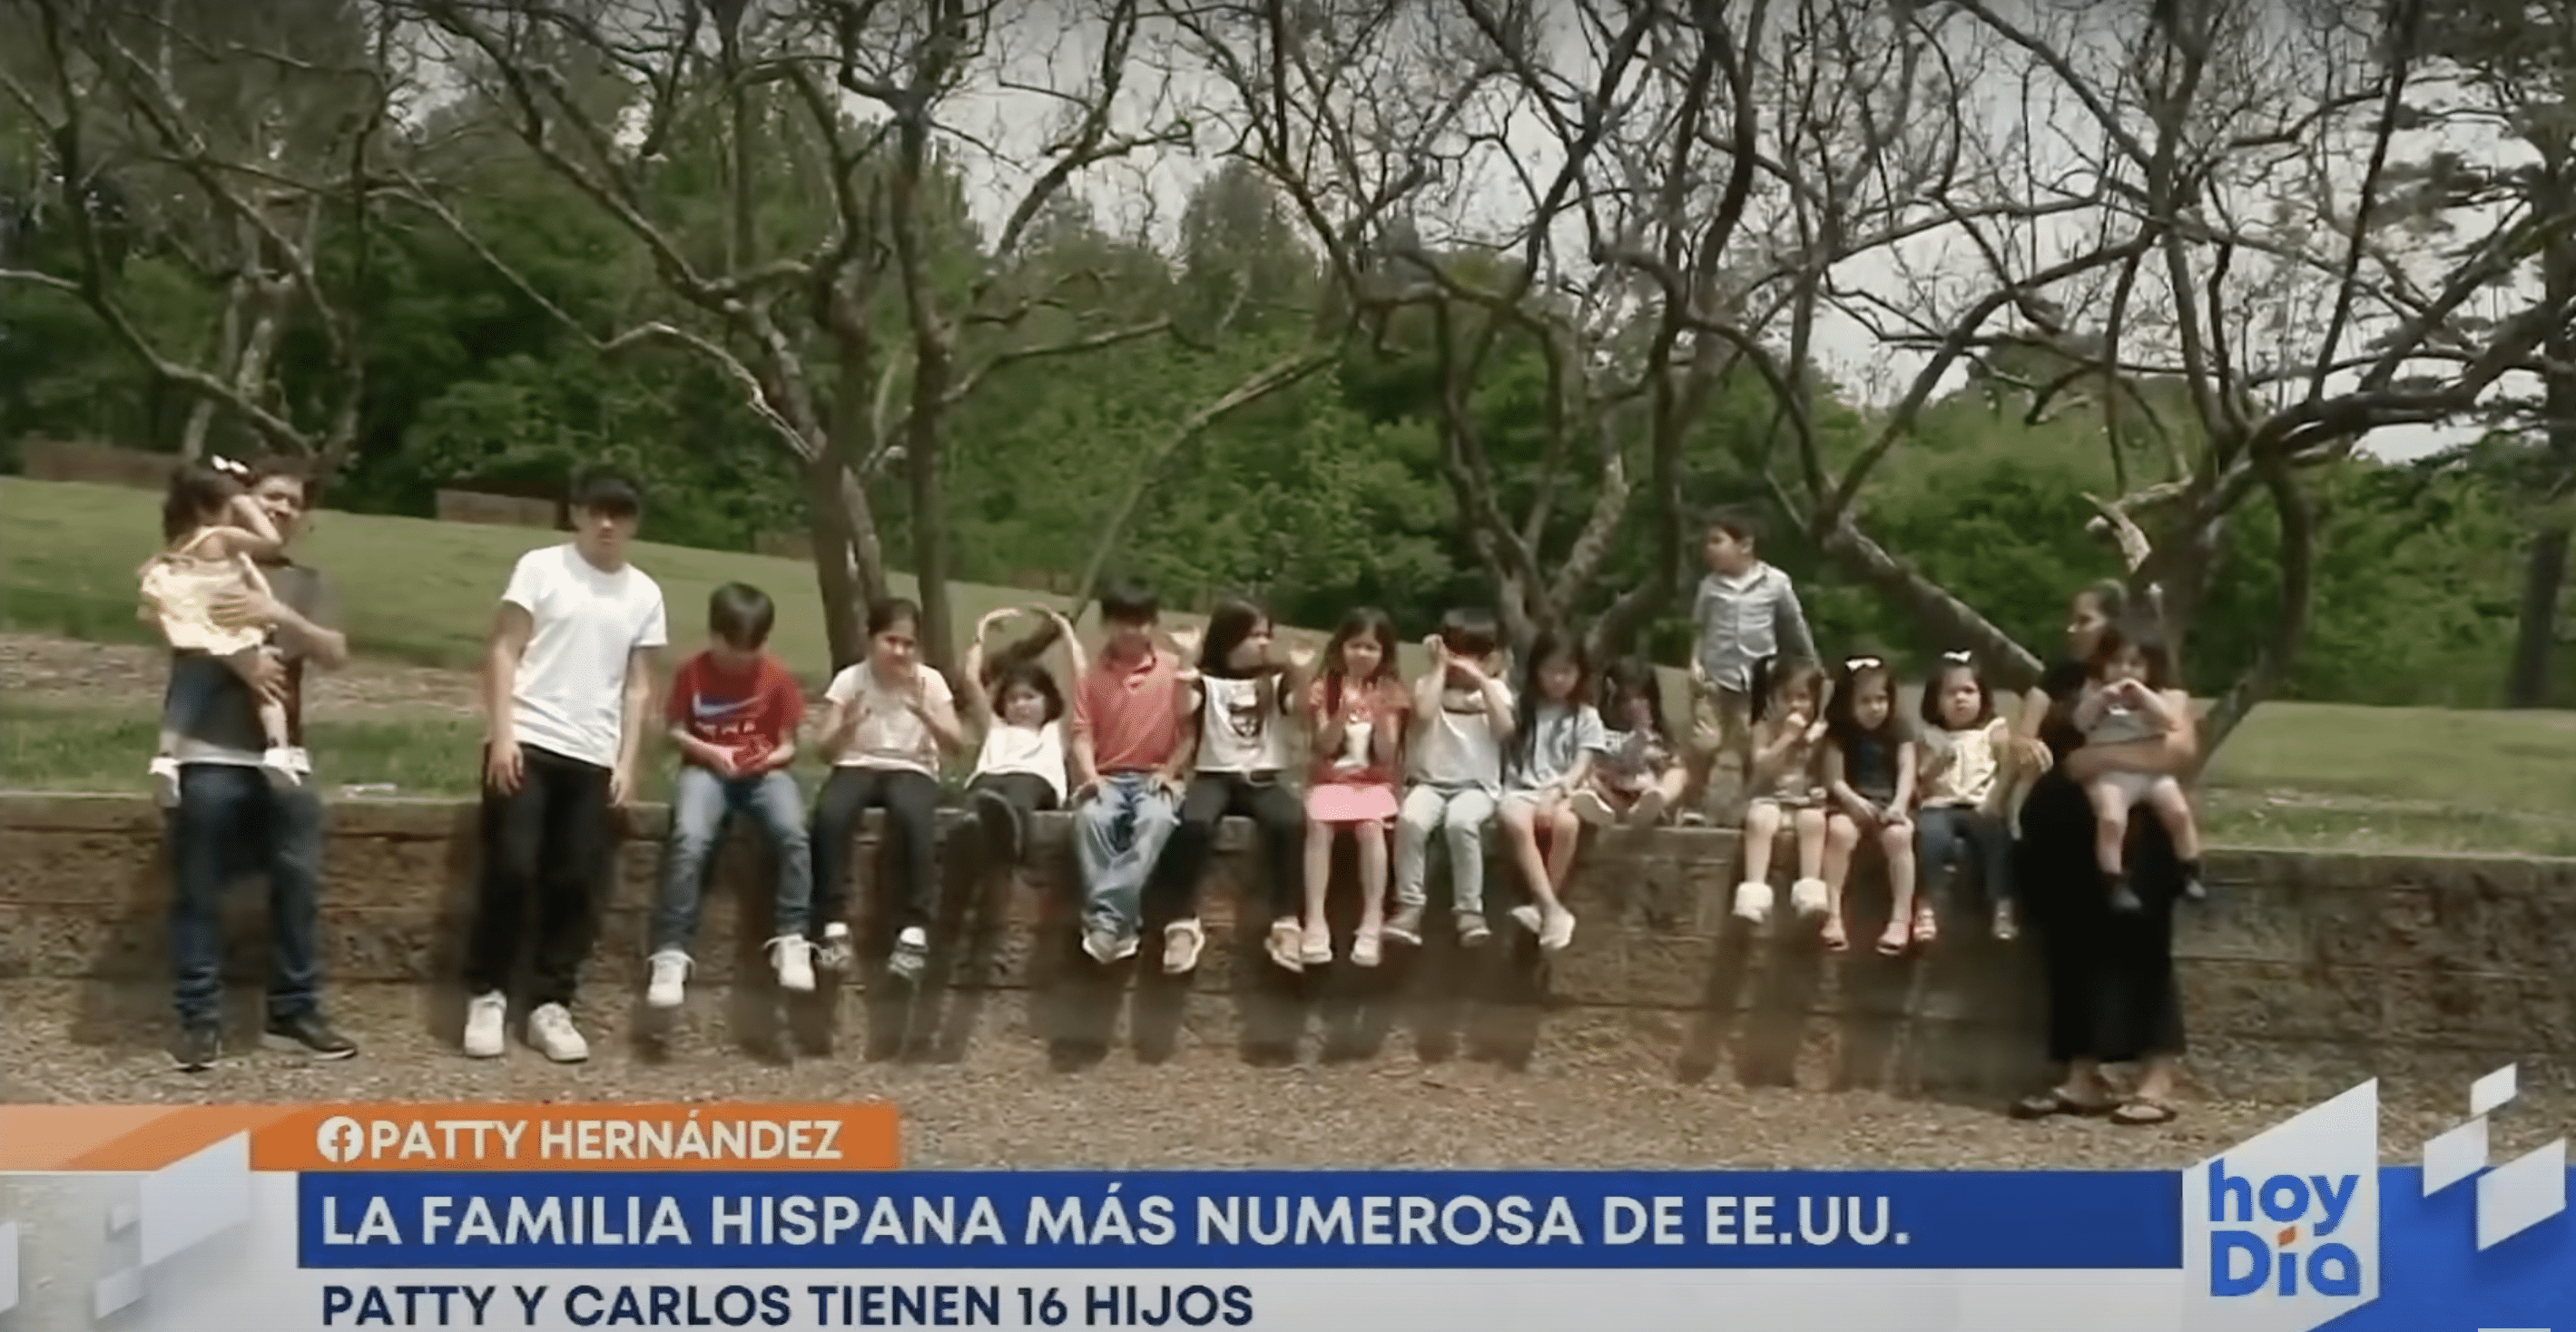 Patty und Carlos Hernandez sind mit ihren 16 Kindern abgebildet. | Quelle: YouTube.com/hoy Día